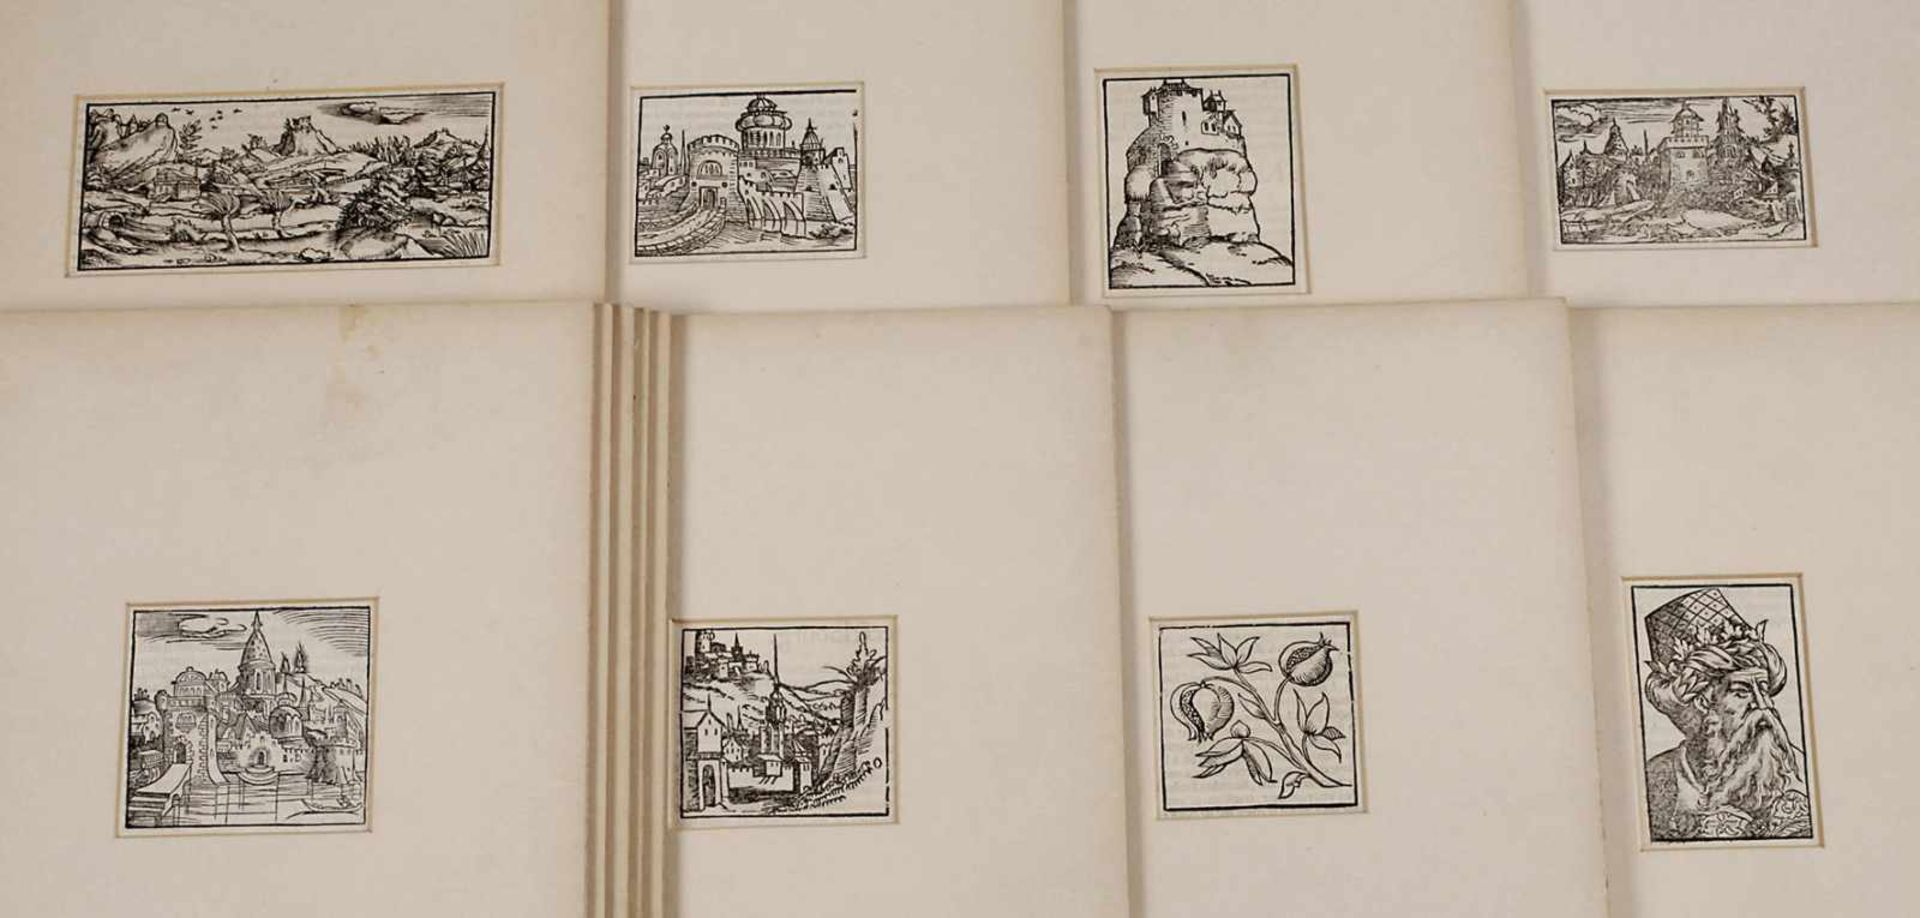 Sammlung Holzschnitte von Sebastian Münster12 Blatt Textholzschnitte, mit der Darstellung von